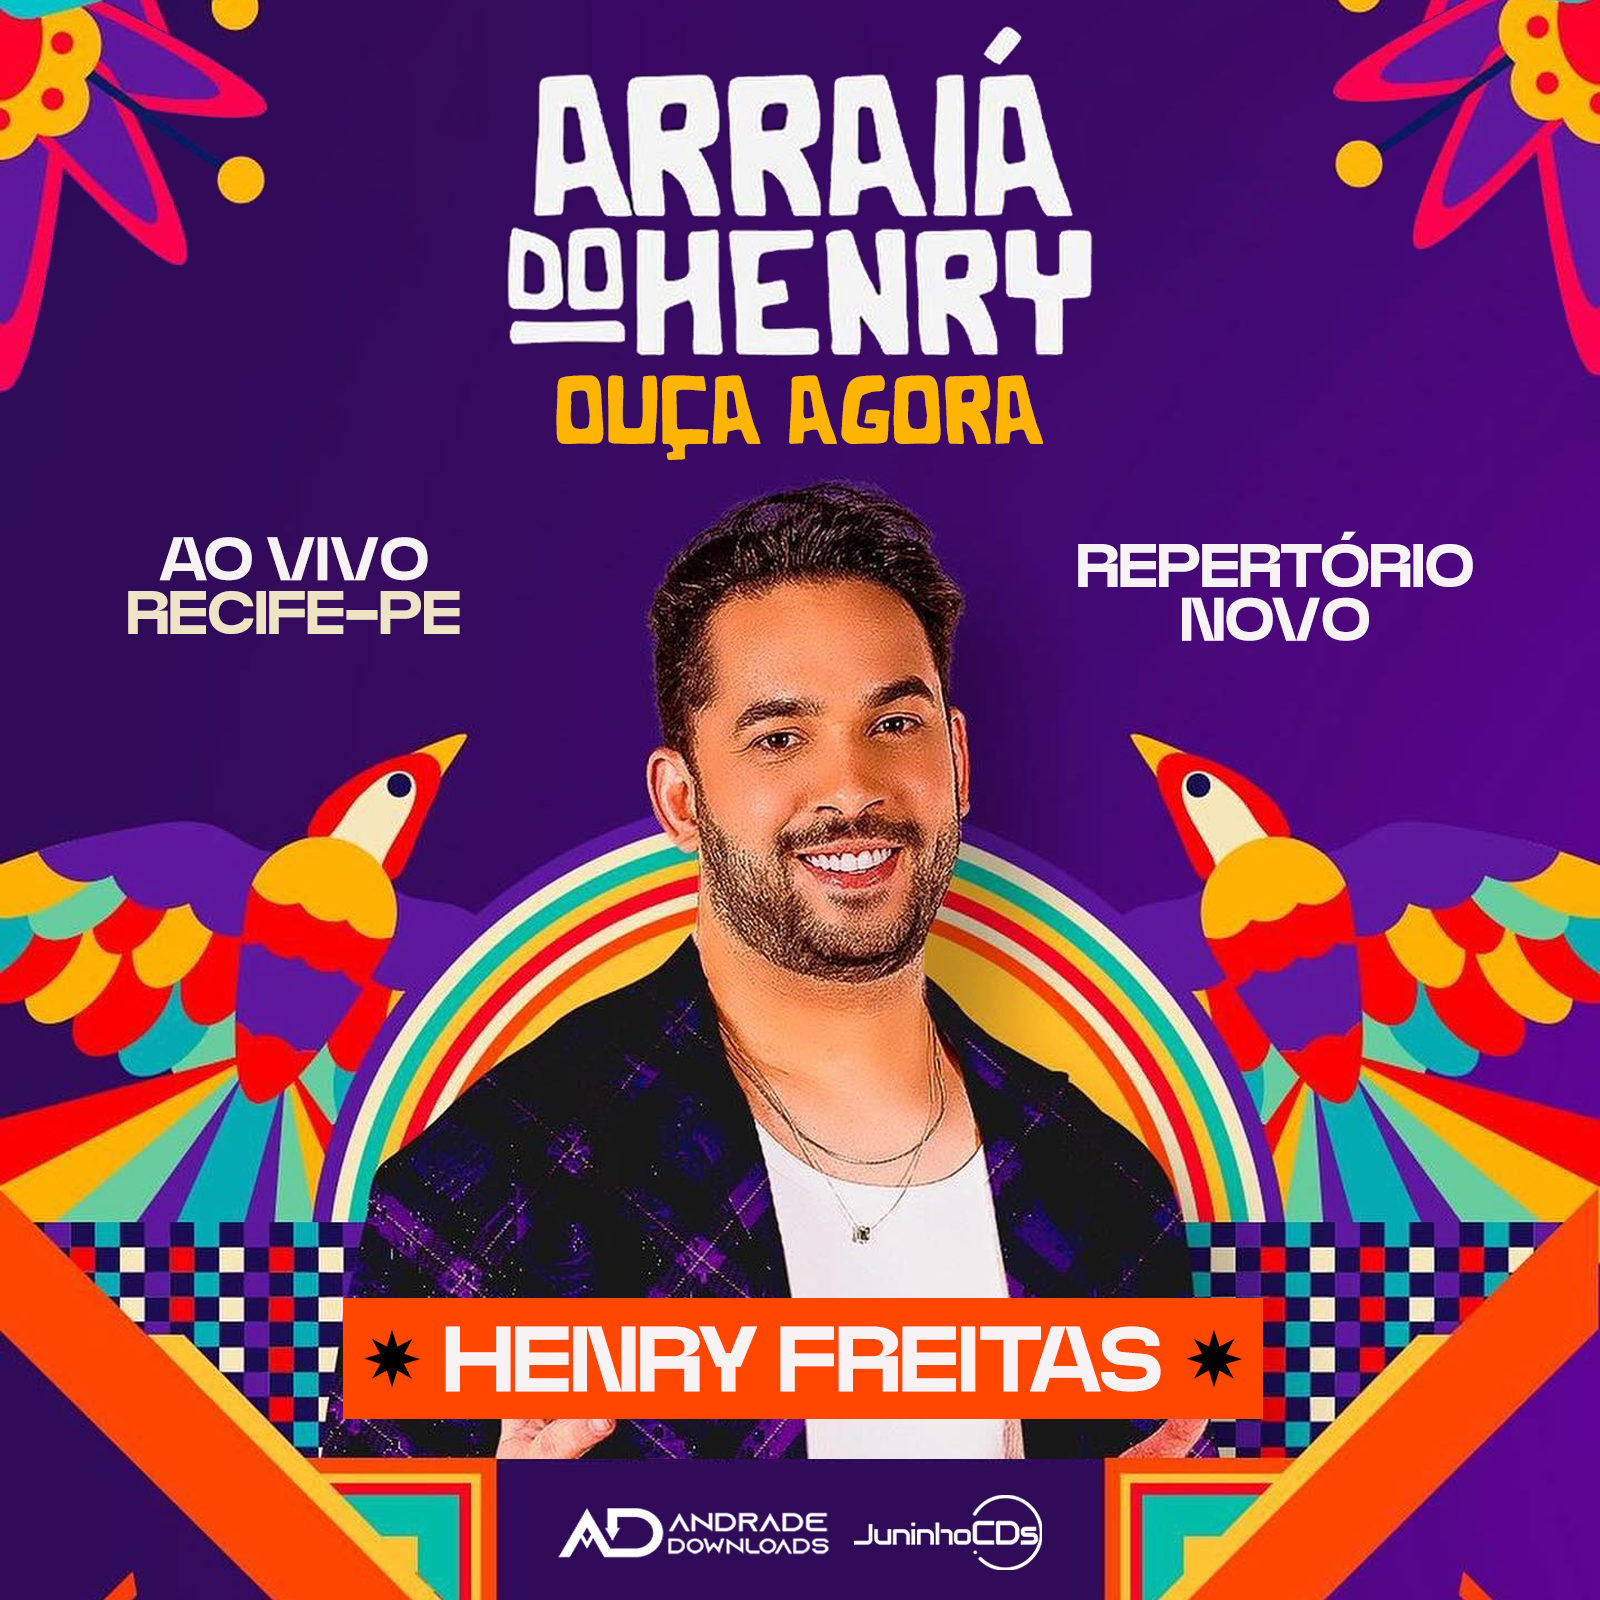 FEED ARRAIA DO HENRY © ANDRADE DOWNLOADS - Baixar CDs, Baixar Musicas e Baixar Shows